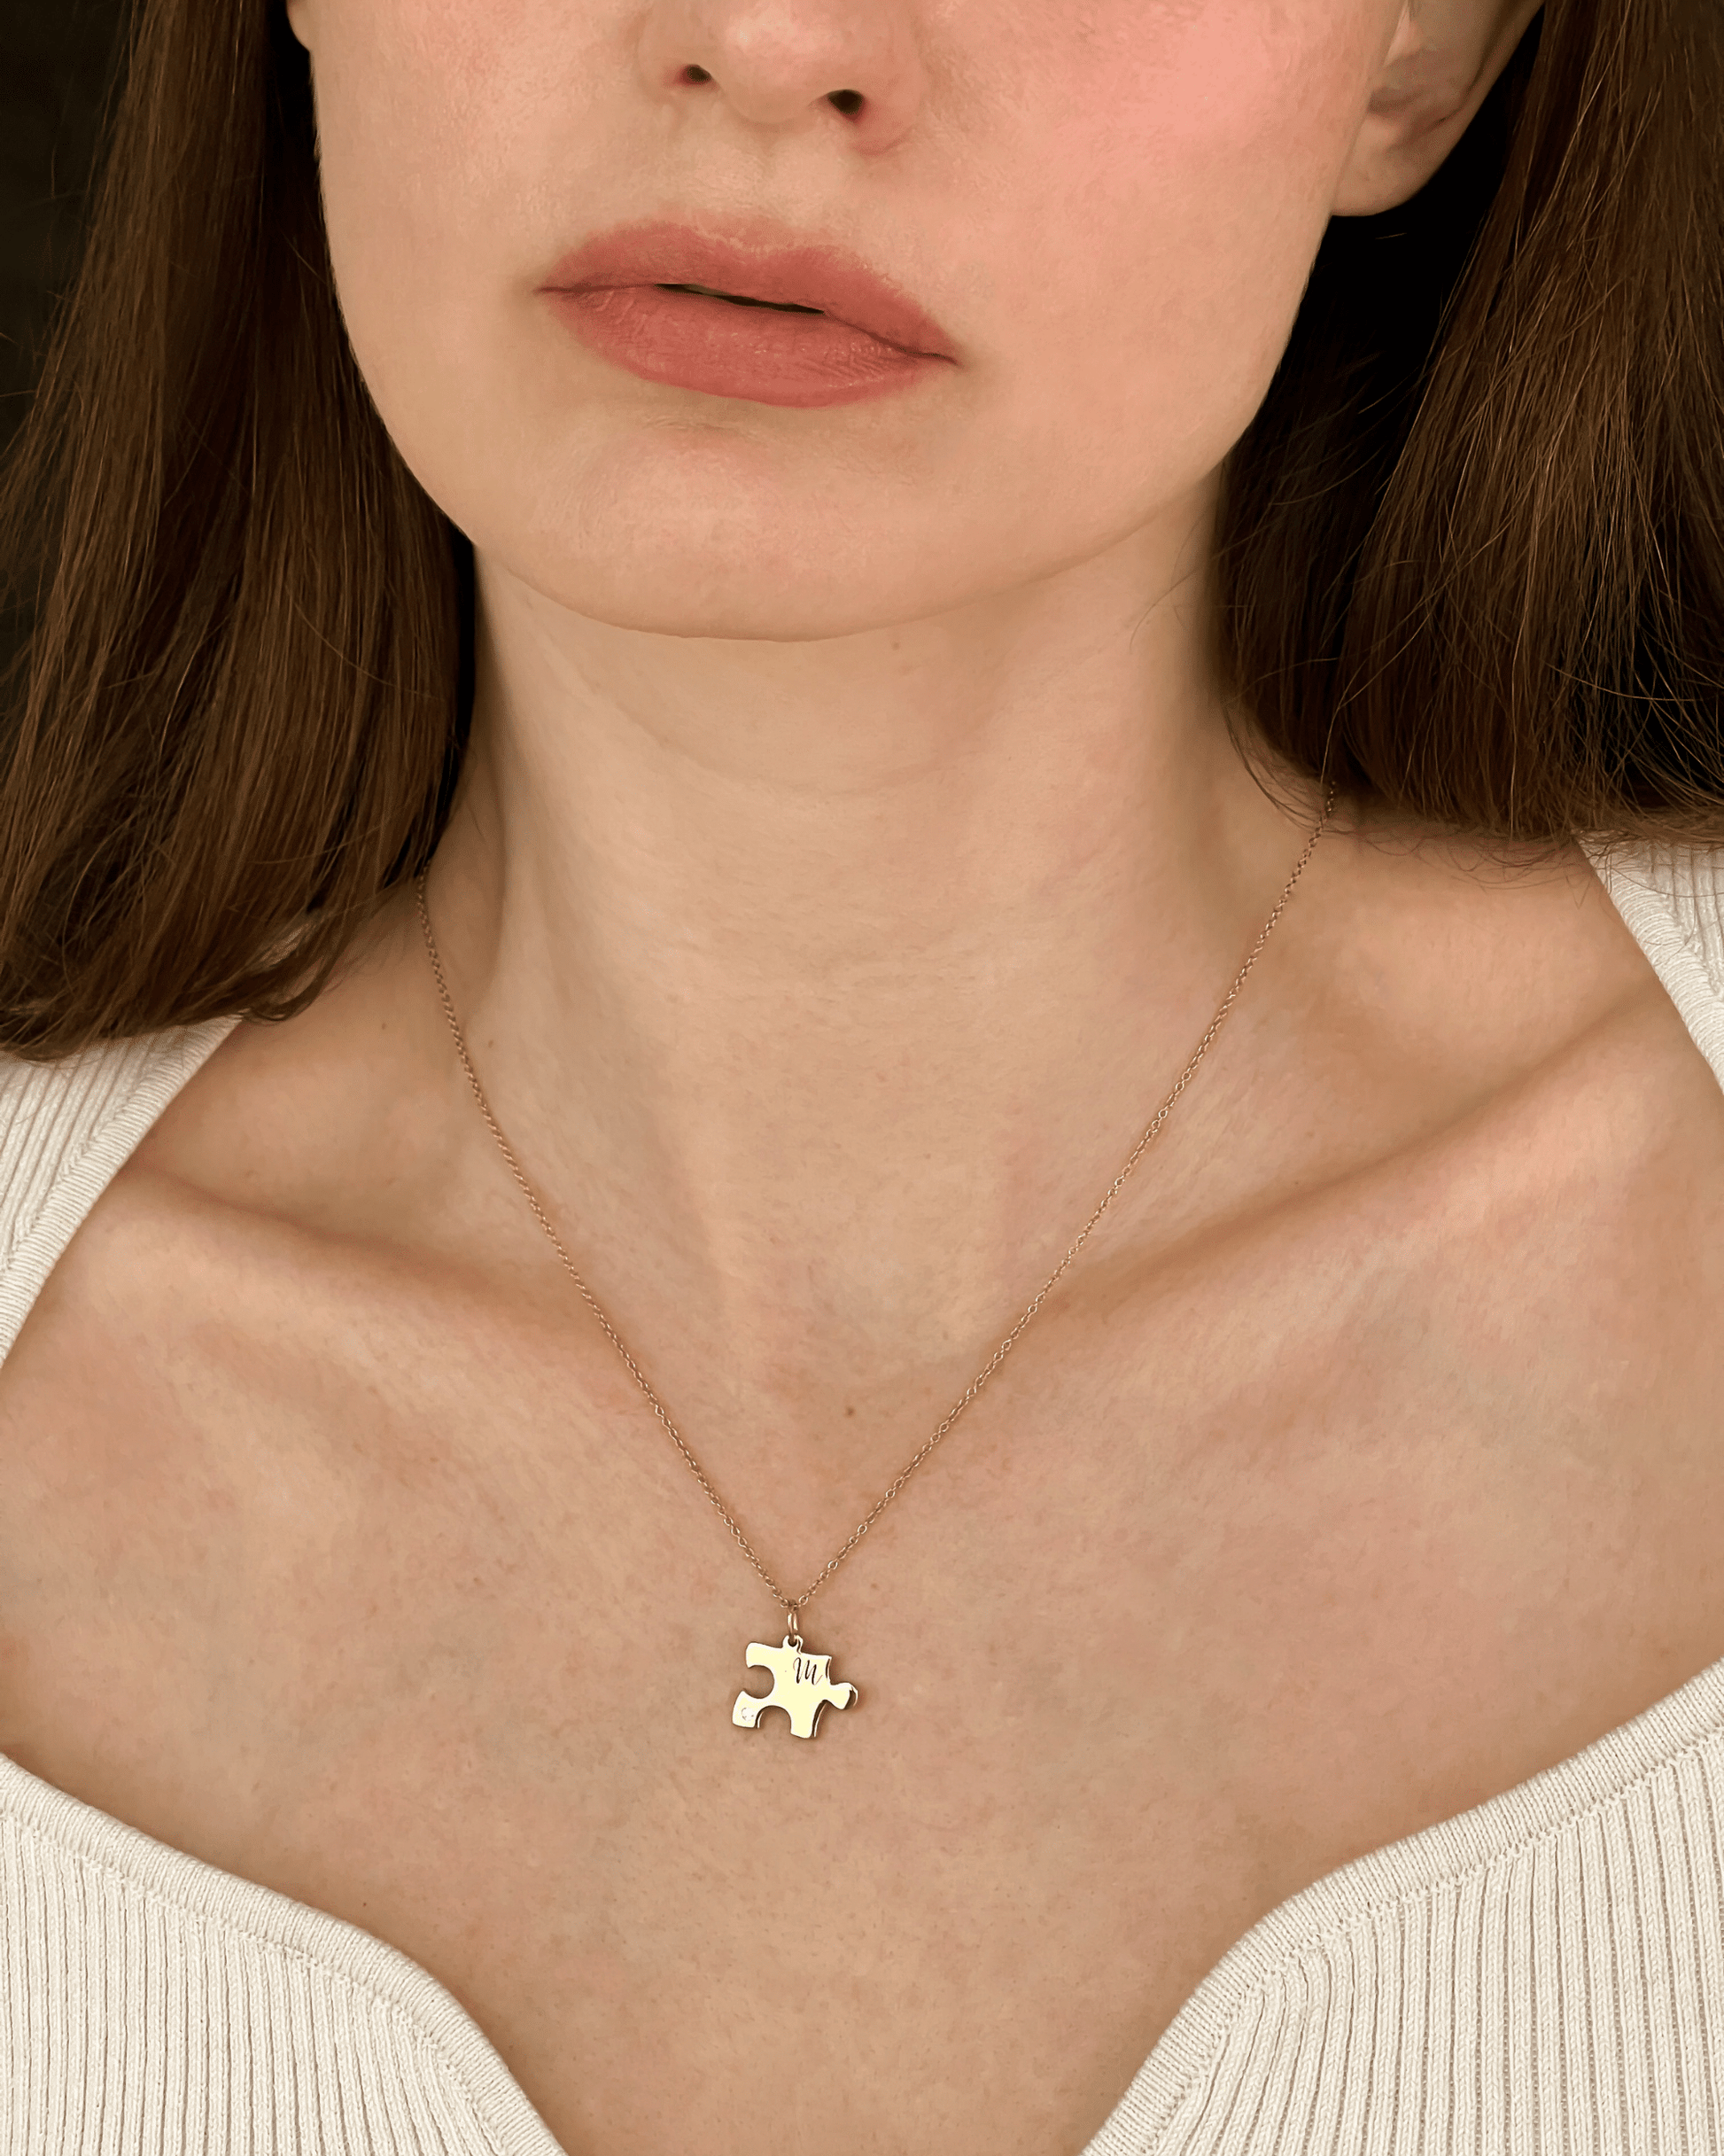 Puzzle Necklaces for Couple - 18K Gold Vermeil Necklaces magal-dev 